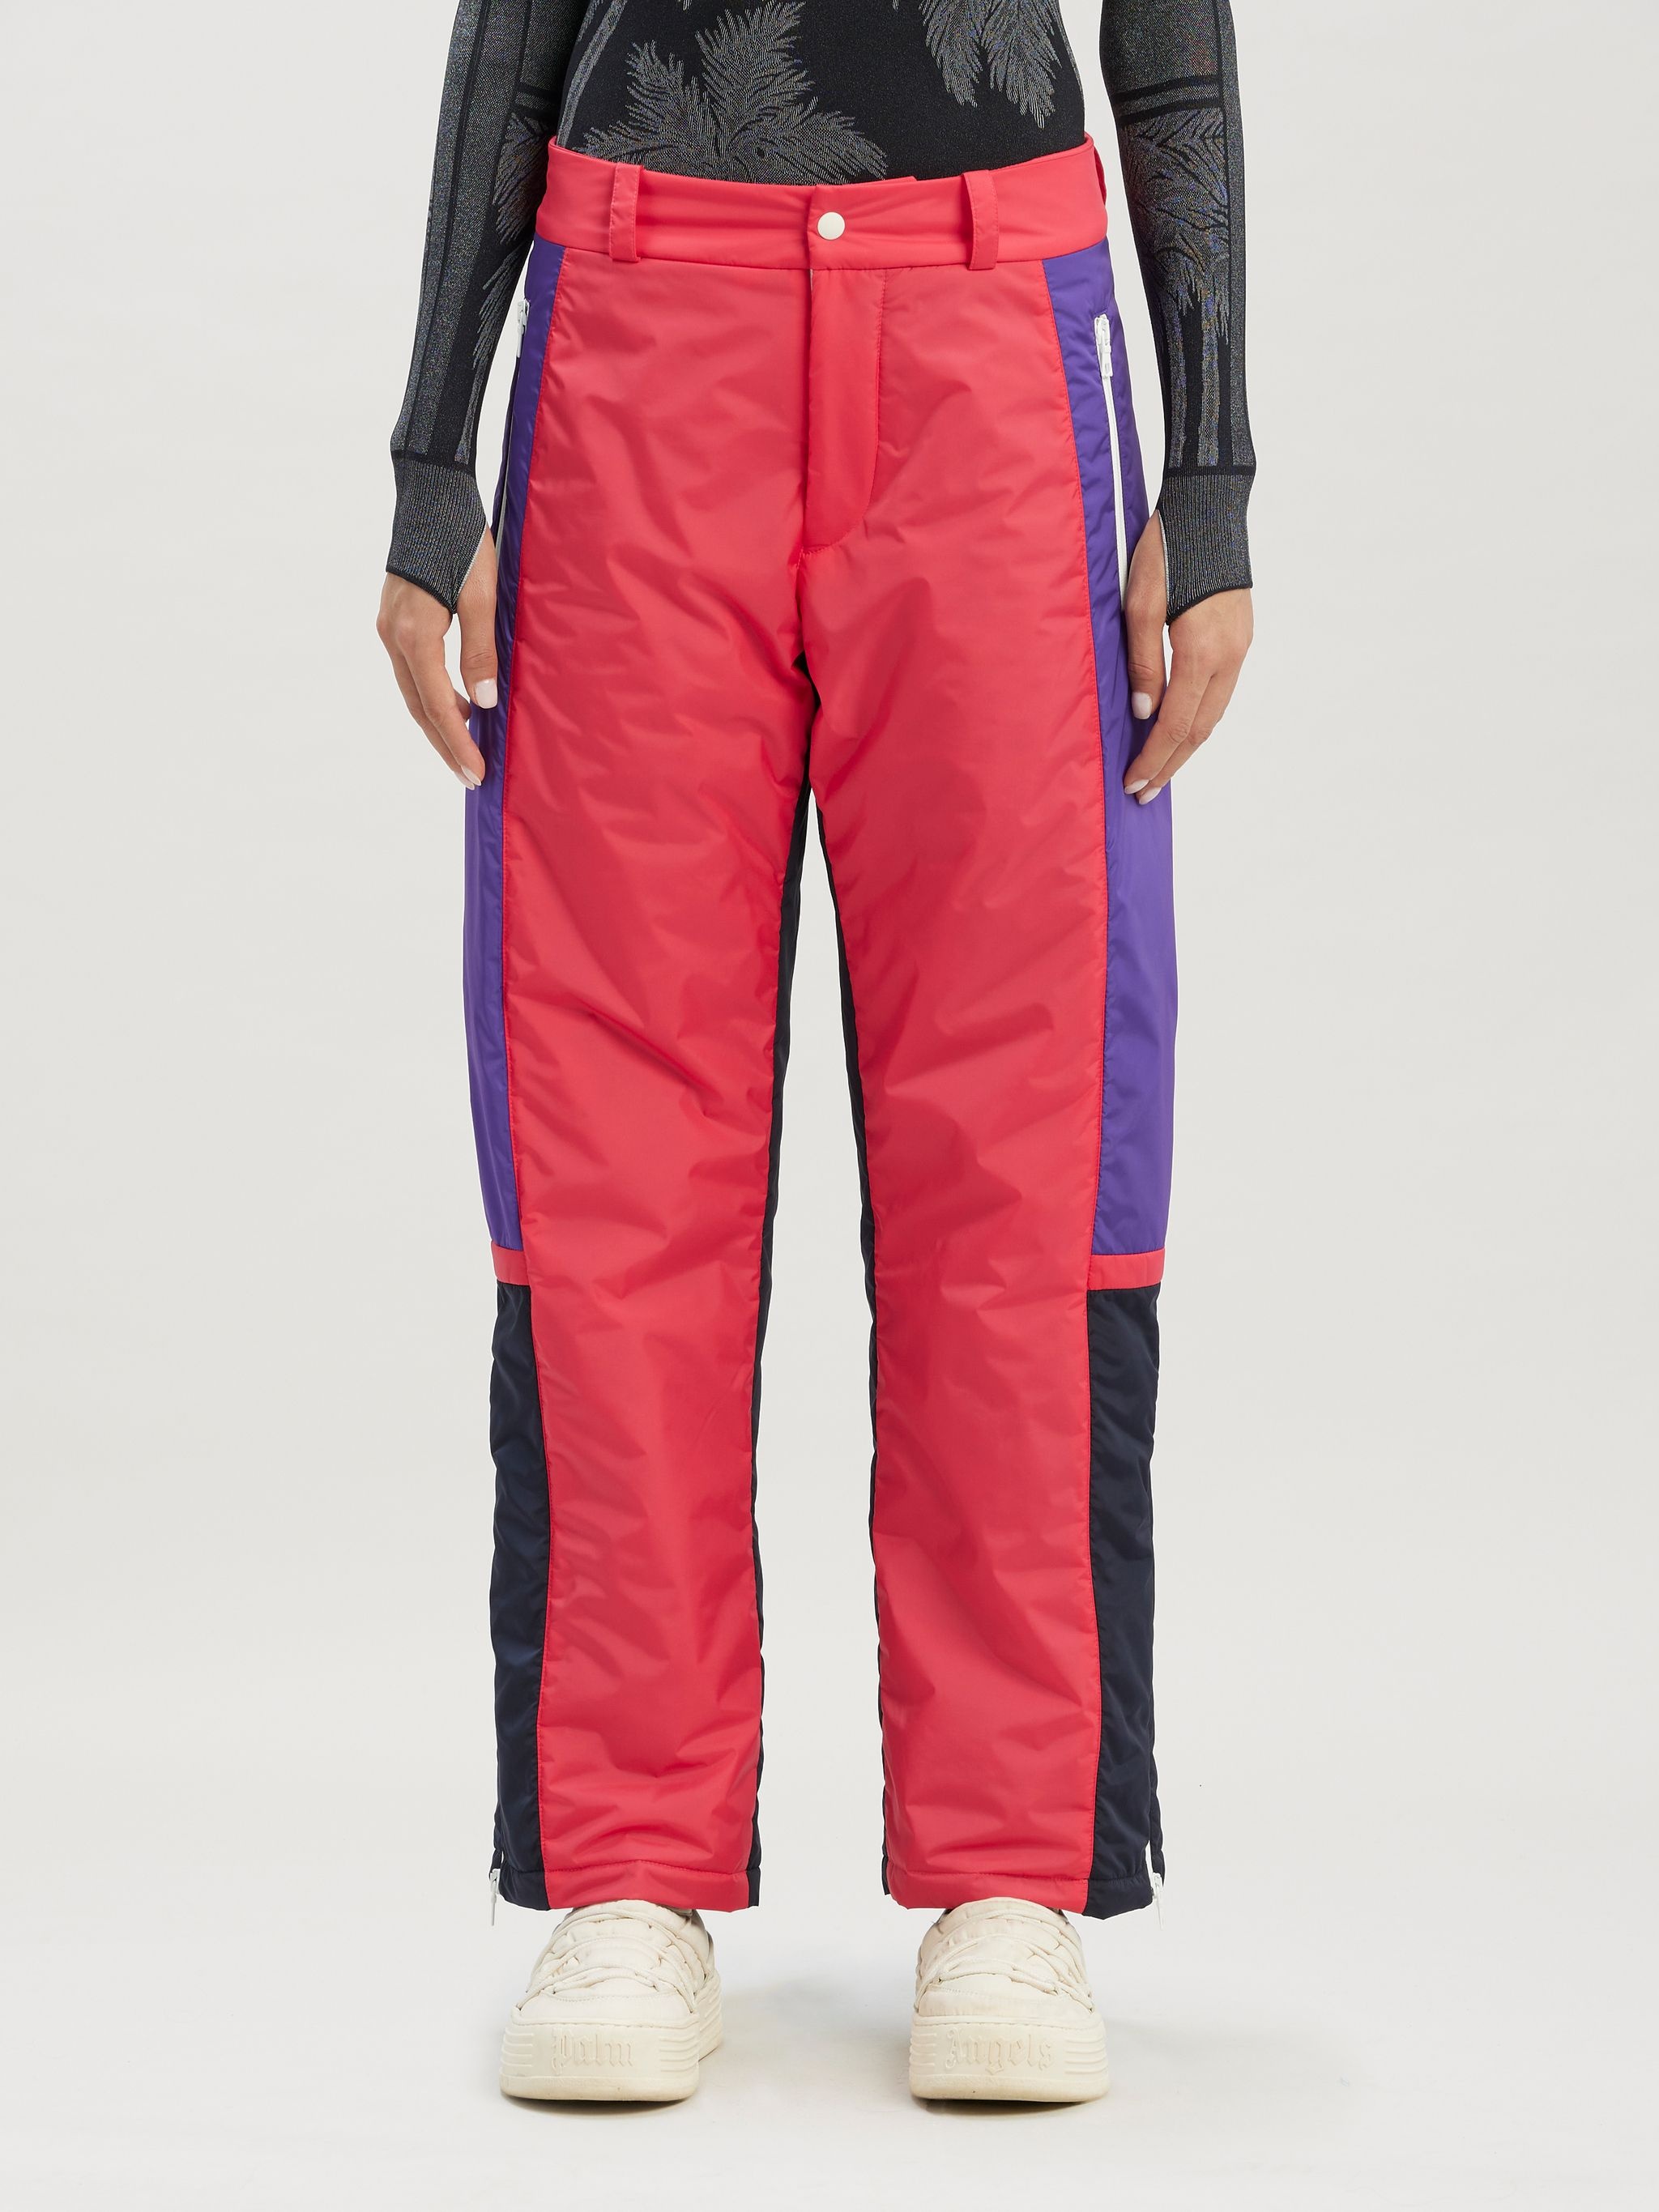 Pxp Thunderbolt Ski Trousers - 3